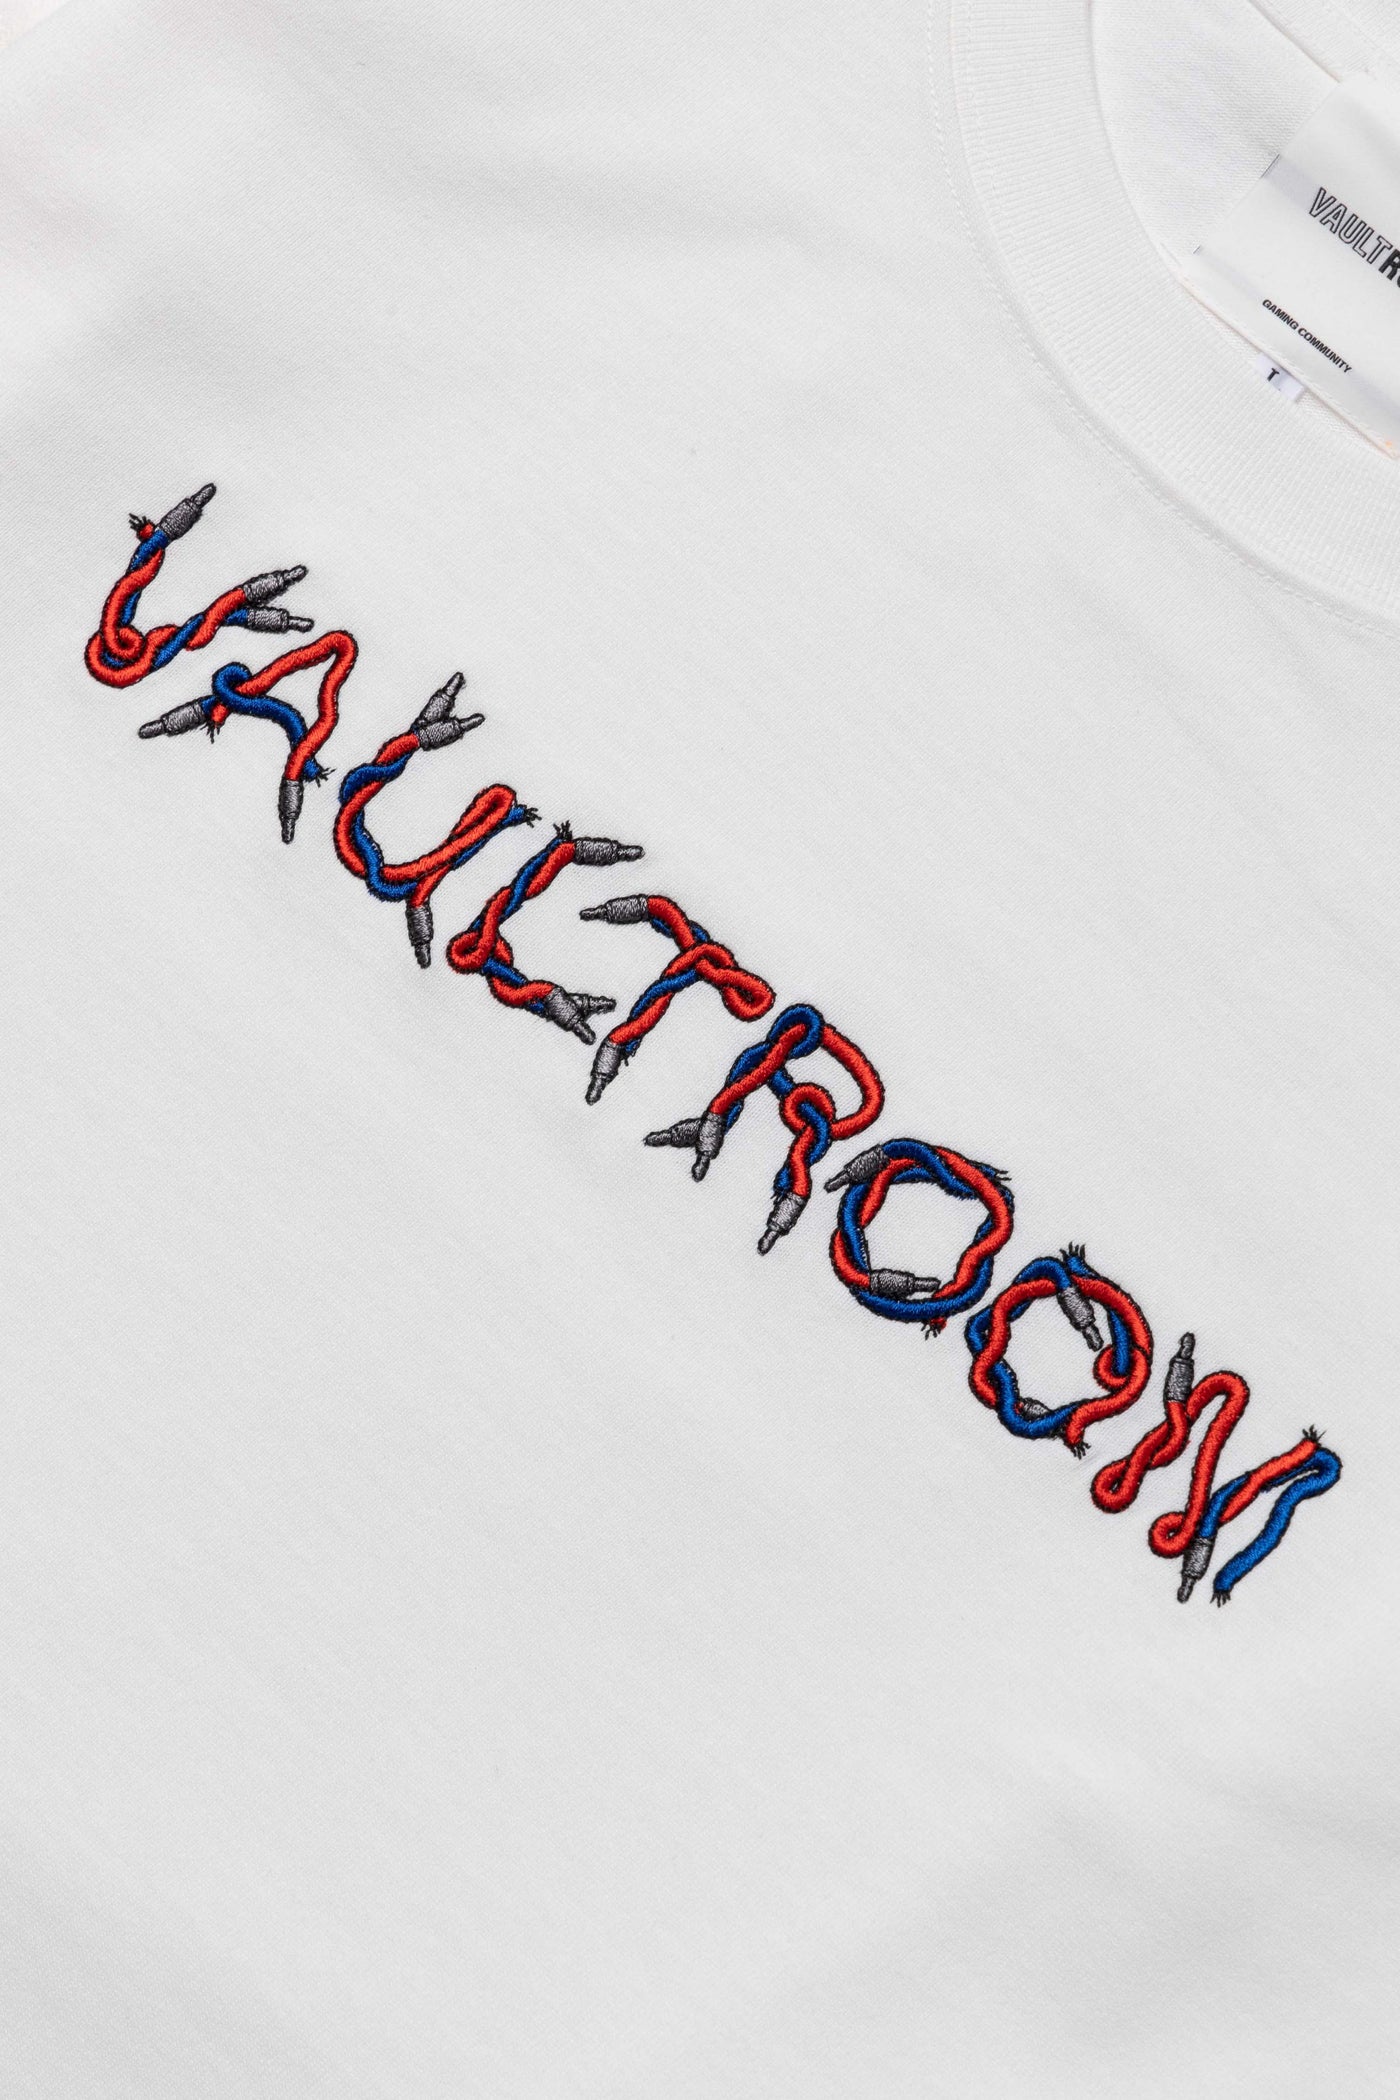 vaultroom】ボルトルーム×チーキー 白Tシャツ 【Mサイズ】 - トップス